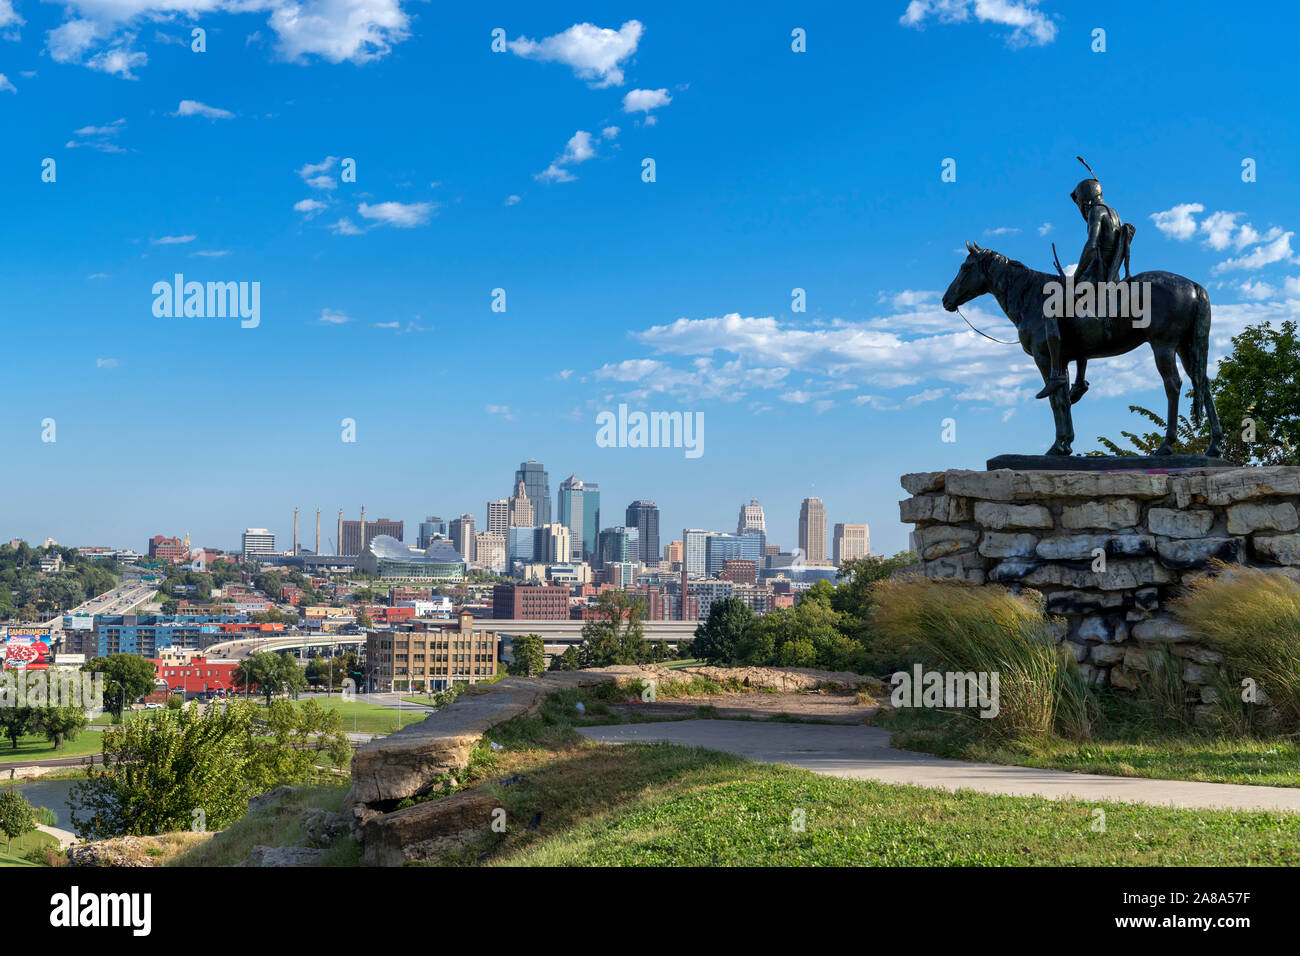 Vue sur le centre-ville de Penn Valley Park, Kansas City, Missouri, États-Unis. Dallin Cyrus's statue d'un Sioux Indan, l'éclaireur, est au premier plan. Banque D'Images